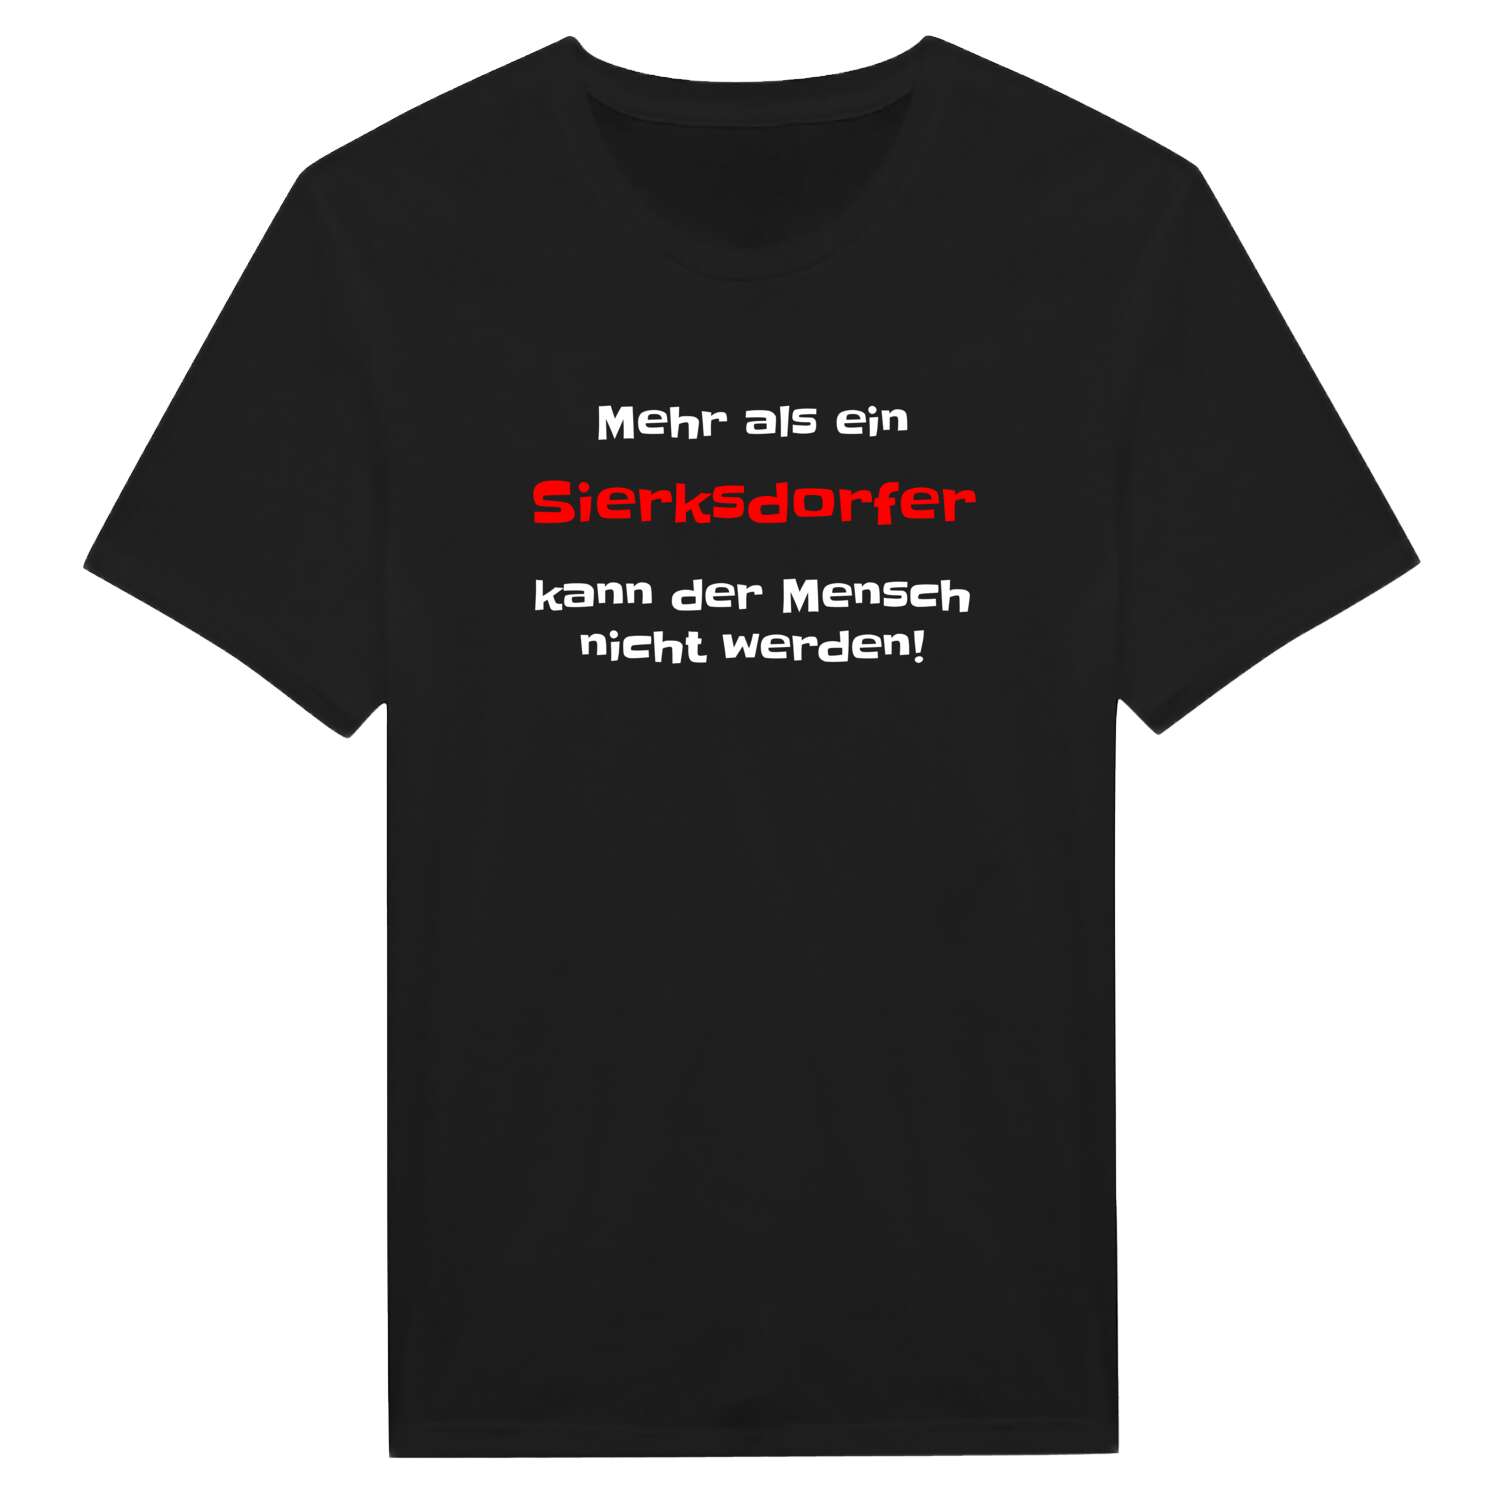 Sierksdorf T-Shirt »Mehr als ein«